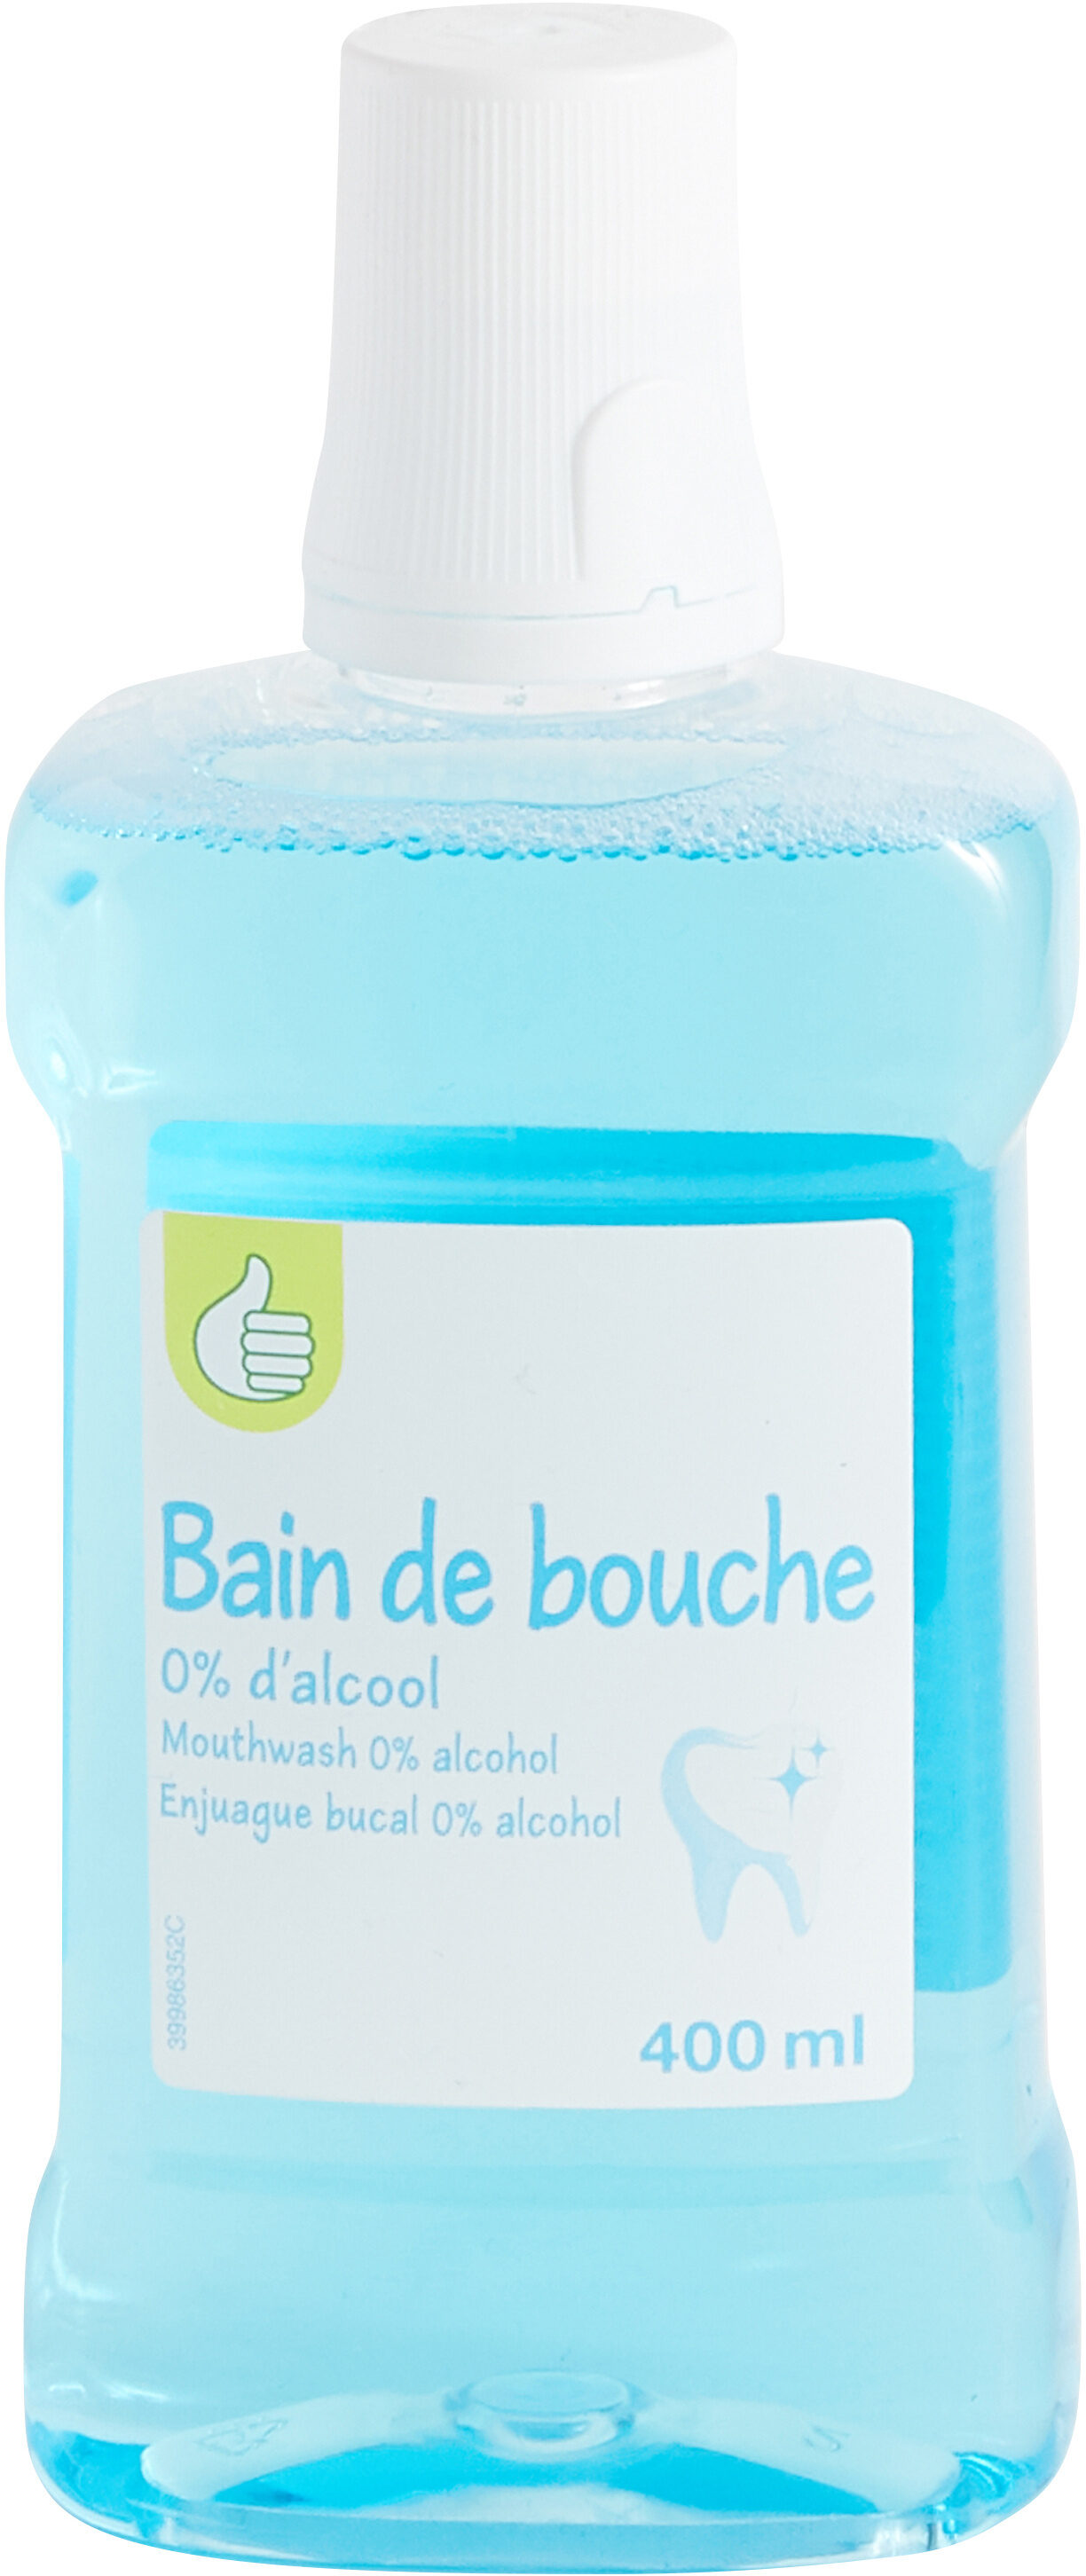 Pouce- bain de bouche - 400 ml e - Ингредиенты - fr